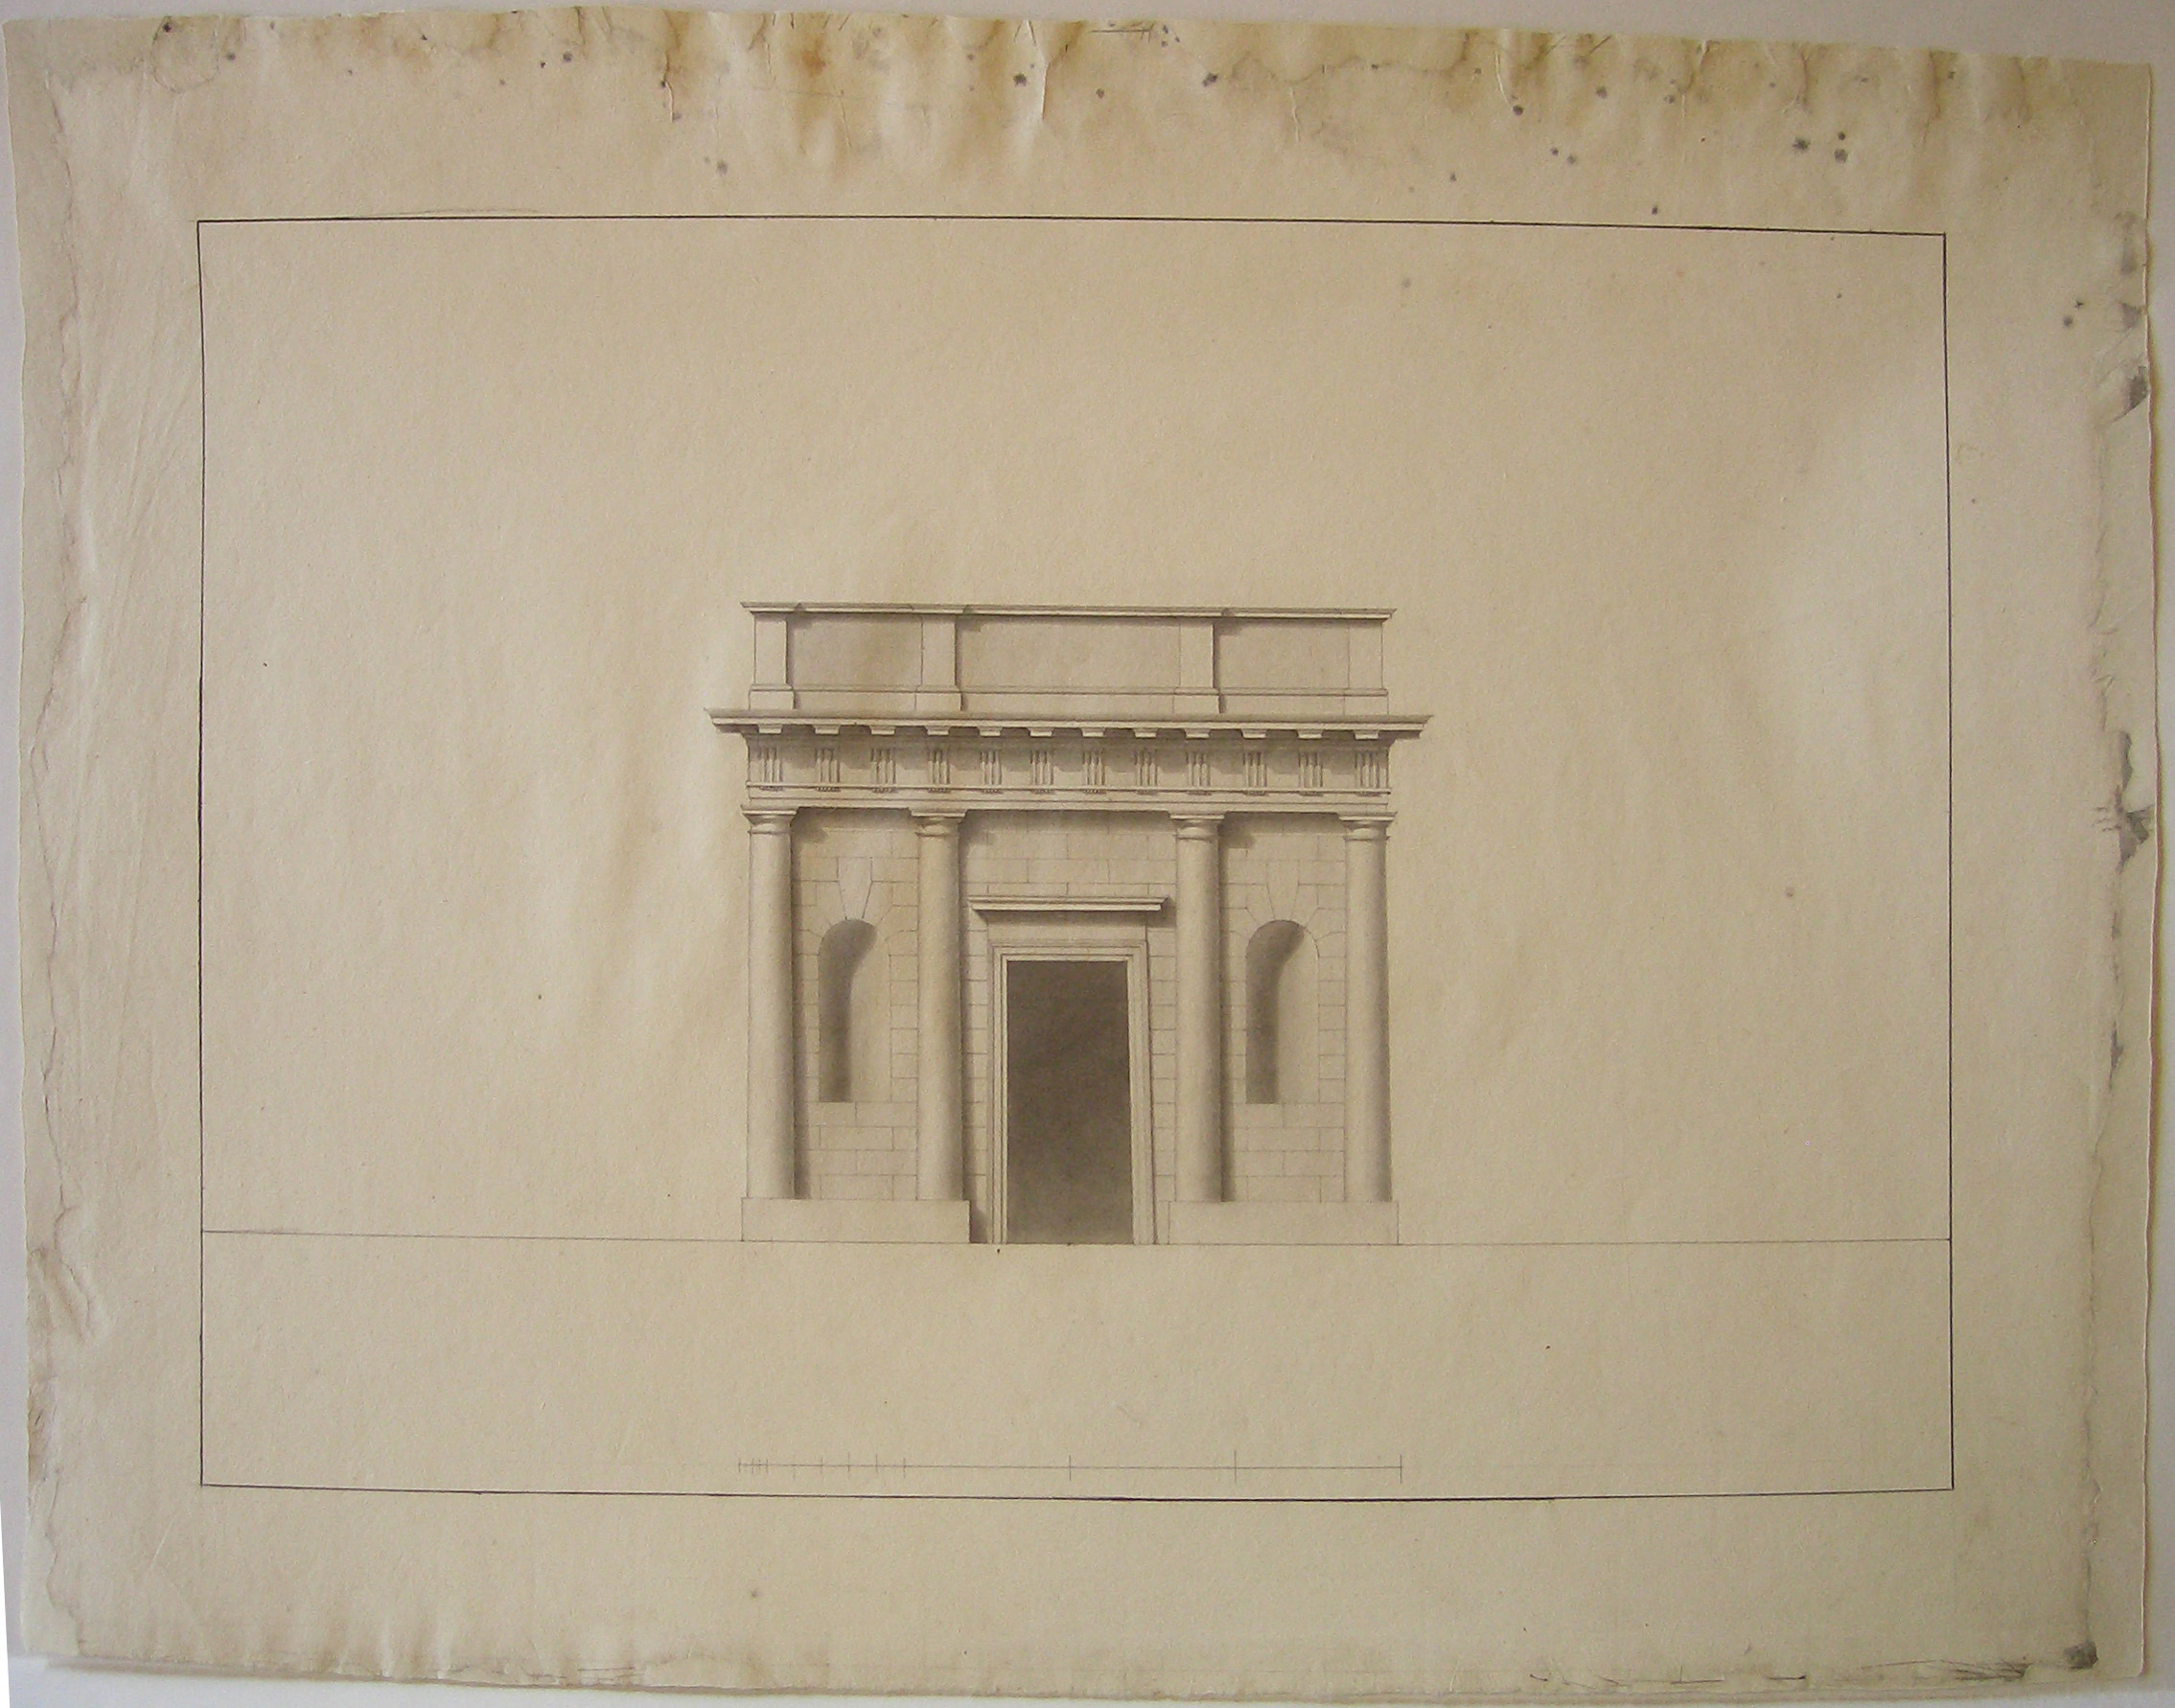 Progetto architettonico: prospetto di casello daziario (disegno architettonico) di Cagnola Luigi (attribuito) (secc. XVIII/XIX)